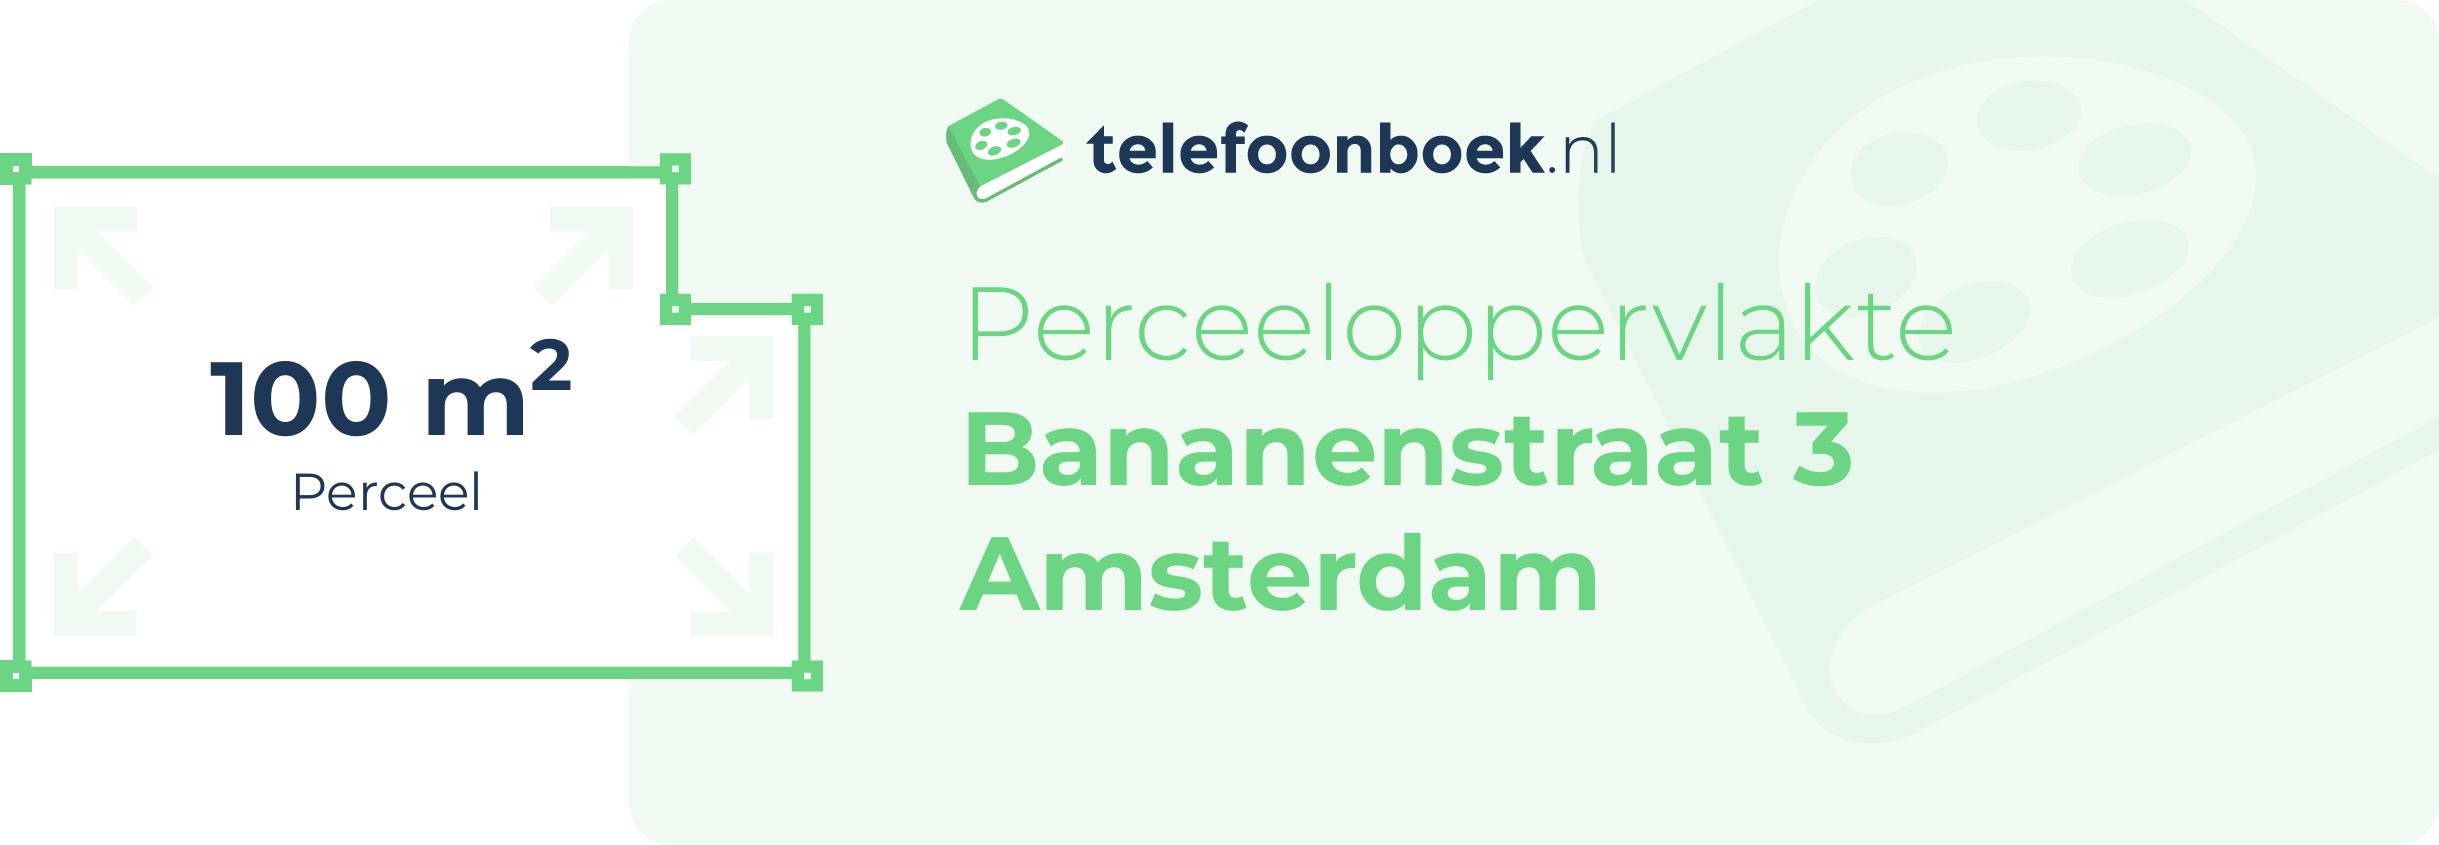 Perceeloppervlakte Bananenstraat 3 Amsterdam